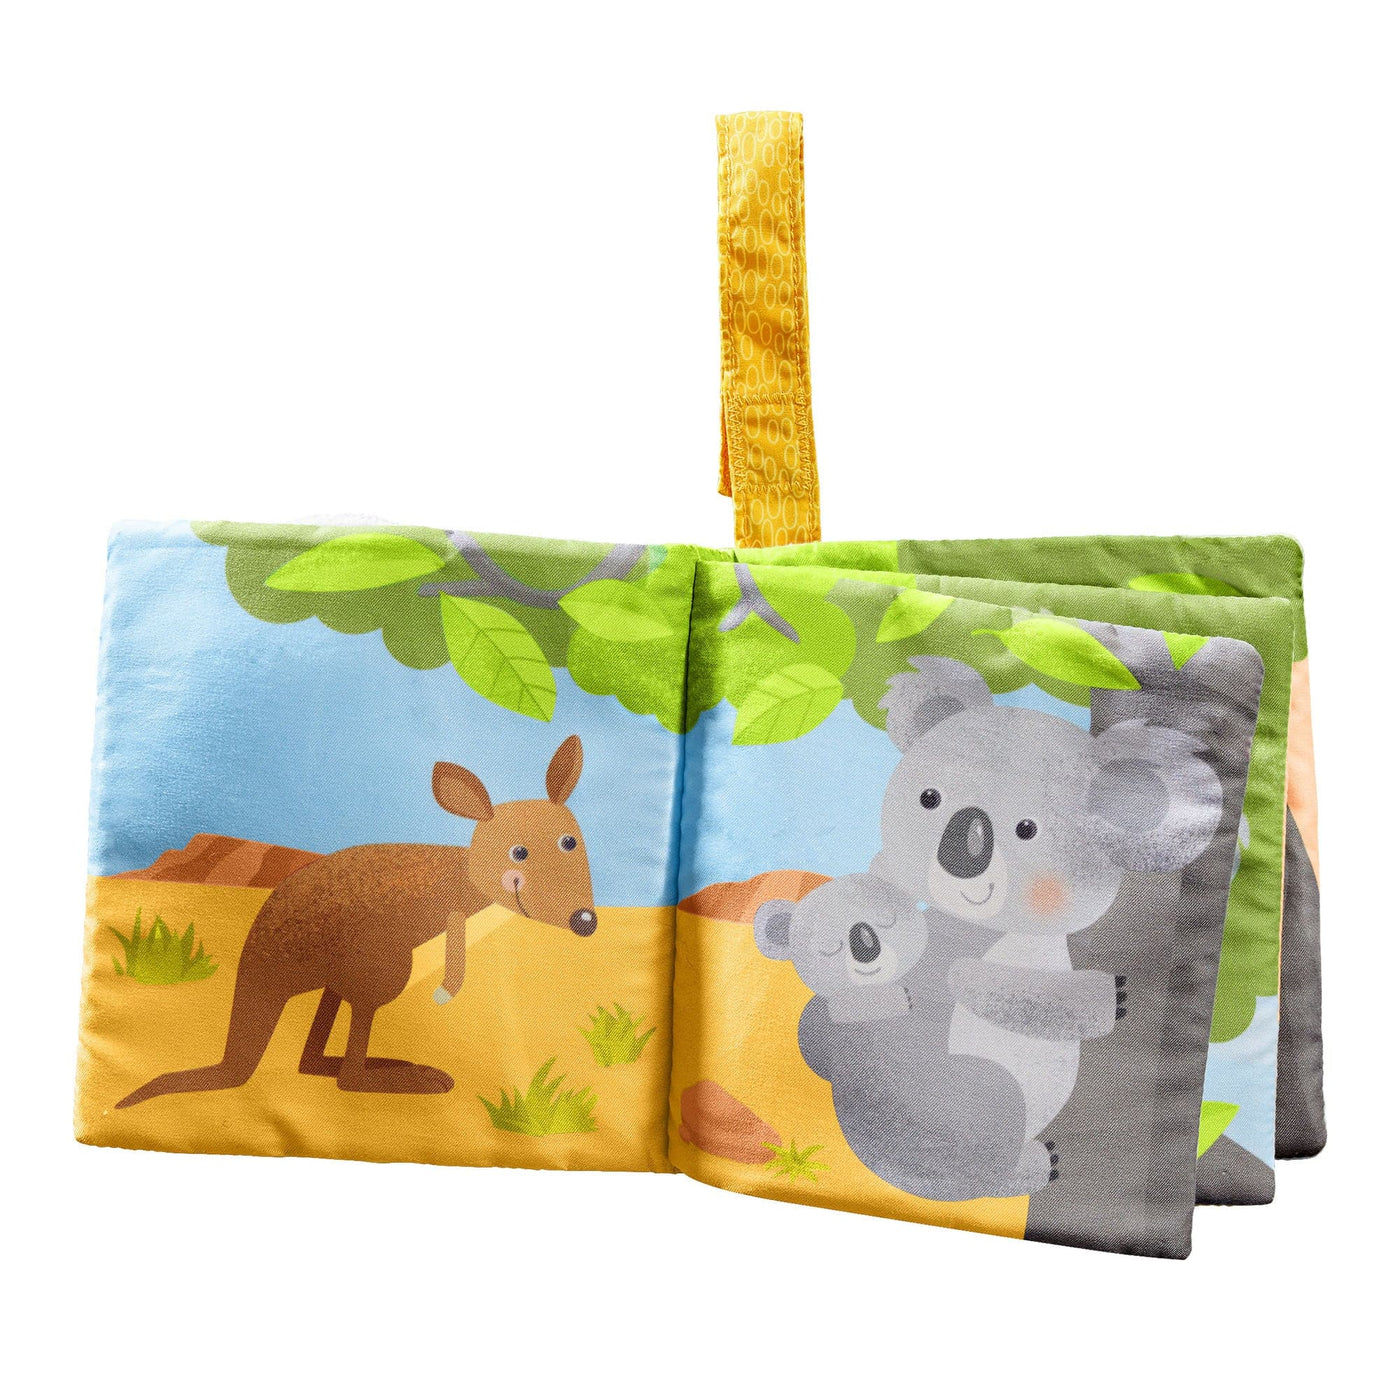 Koala Fabric Book - HABA USA